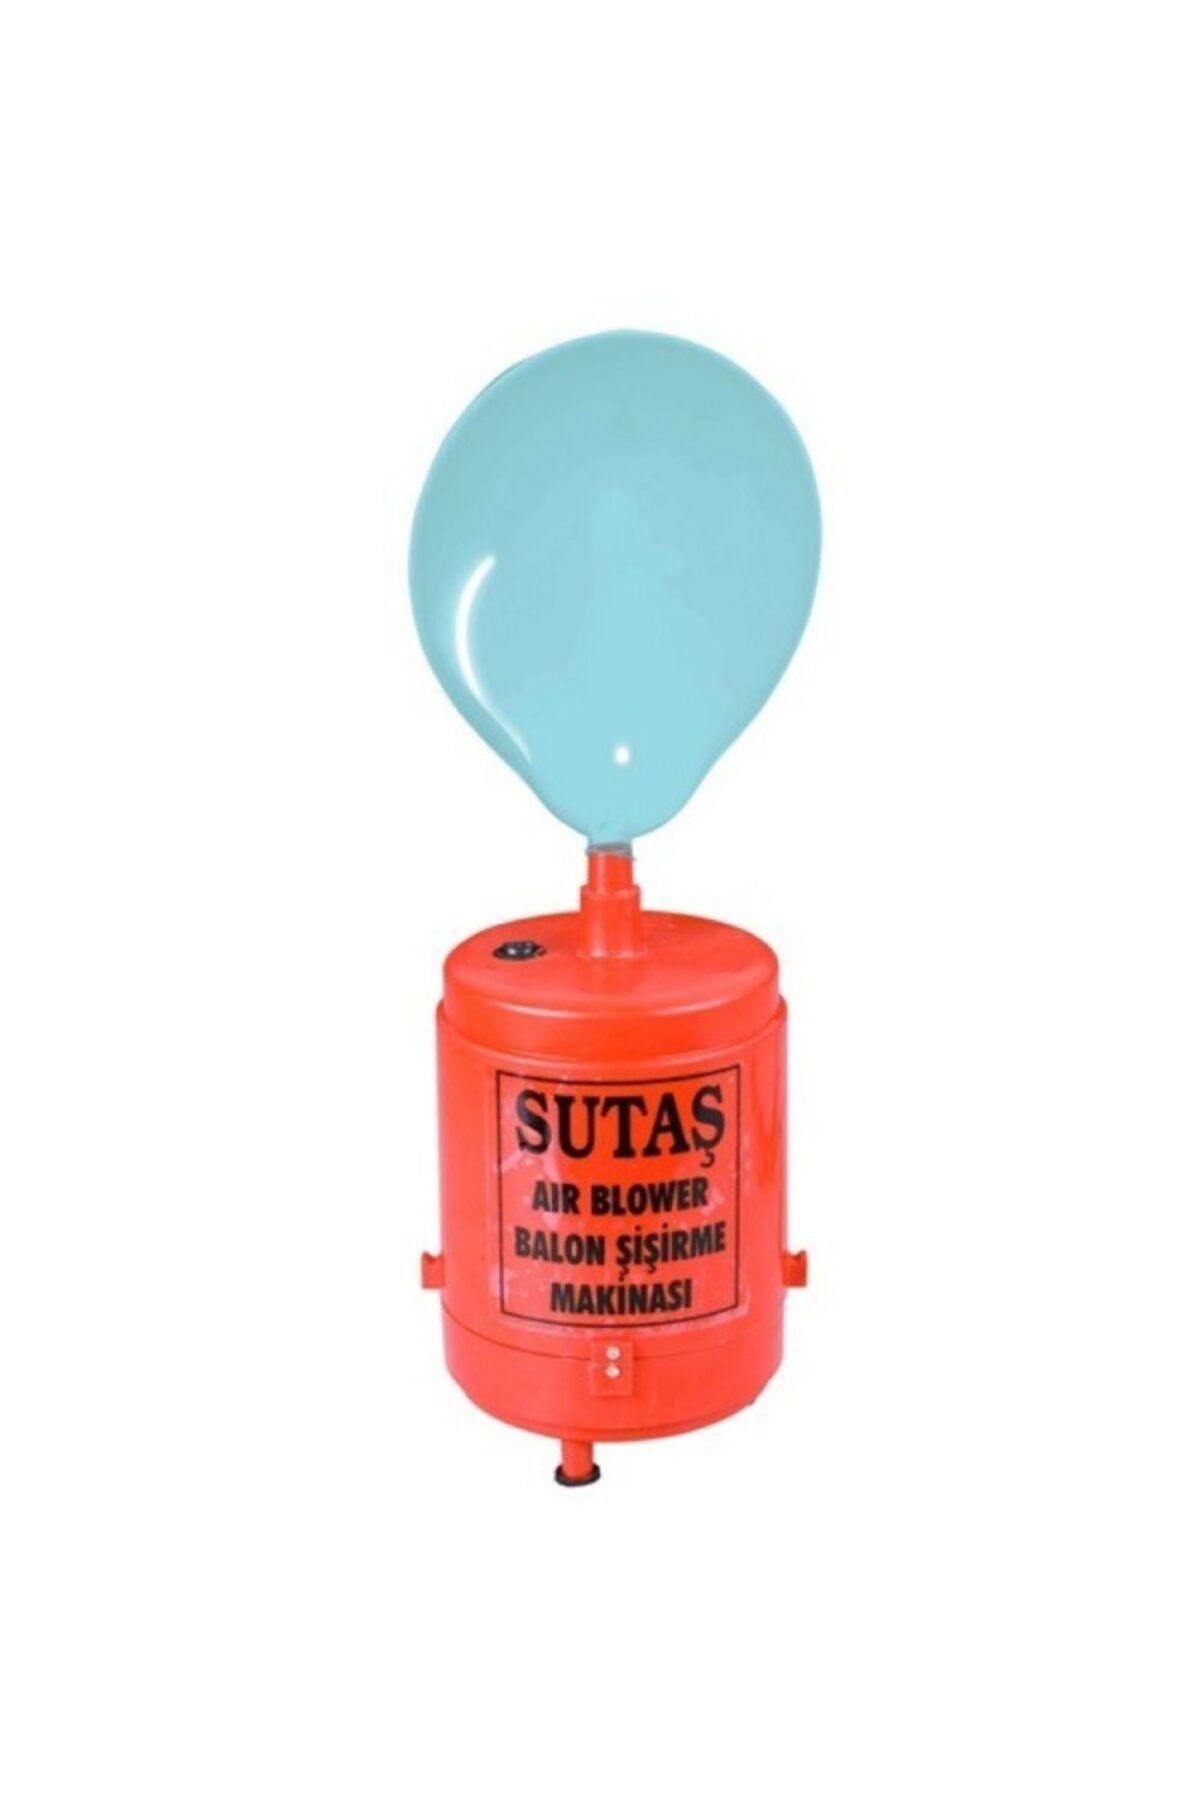 Weblonya Sutaş Air Blower Balon Şişirme Pompası Elektrikli Pompa Kompresör